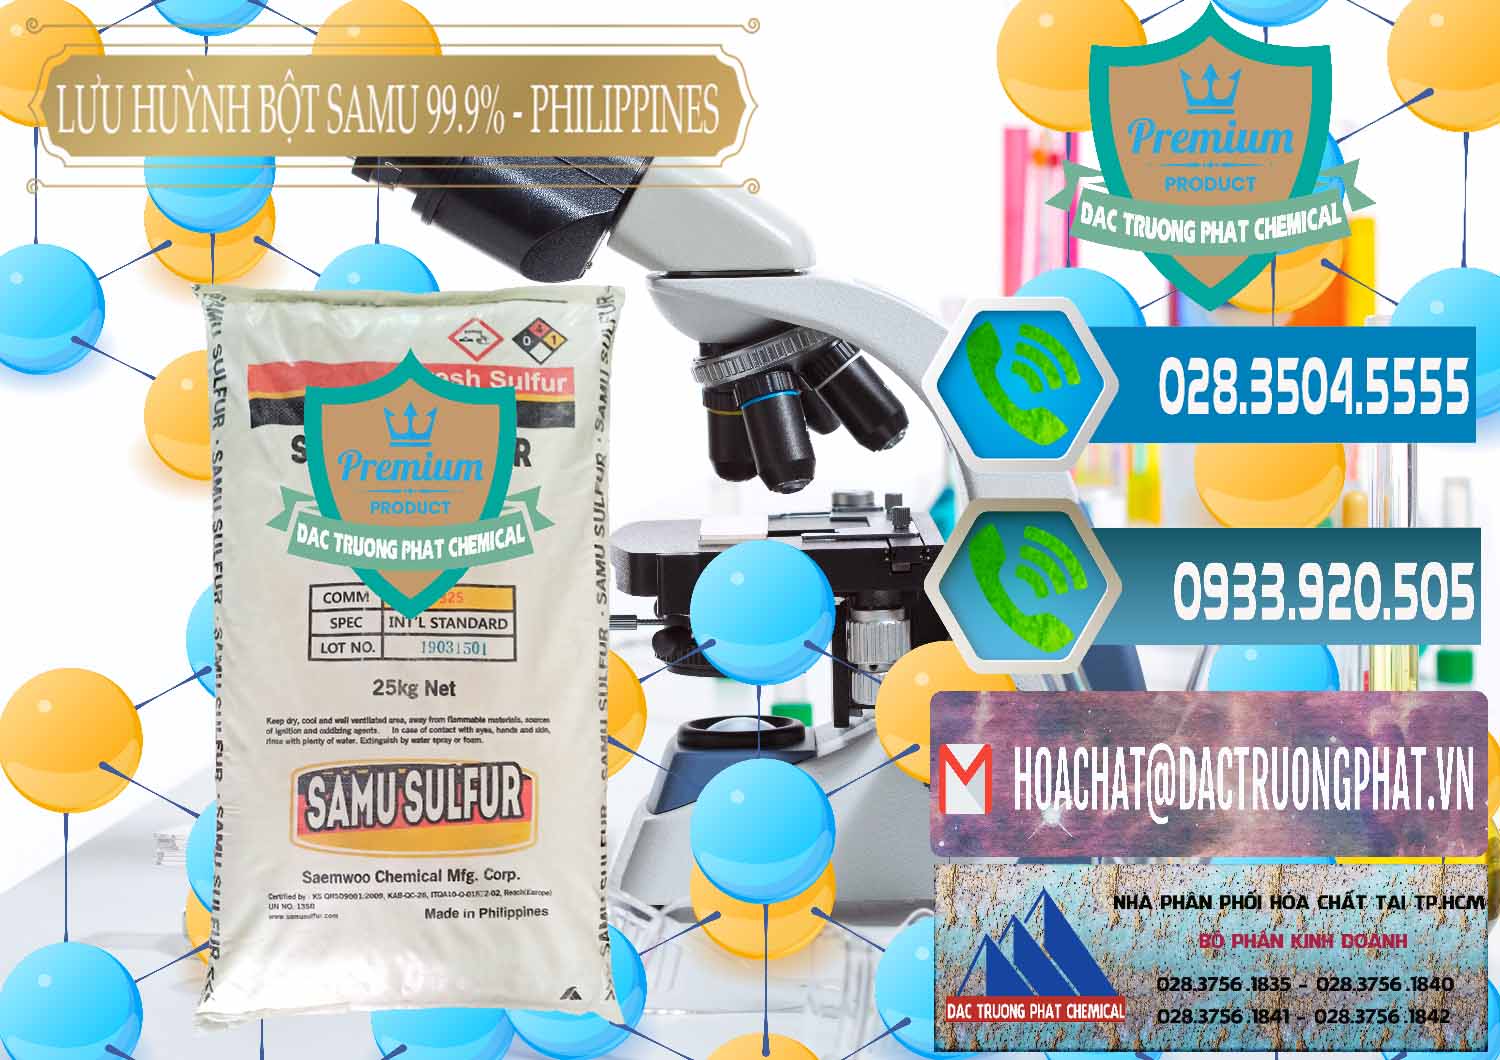 Cty nhập khẩu - bán Lưu huỳnh Bột - Sulfur Powder Samu Philippines - 0201 - Cty chuyên kinh doanh _ cung cấp hóa chất tại TP.HCM - congtyhoachat.net